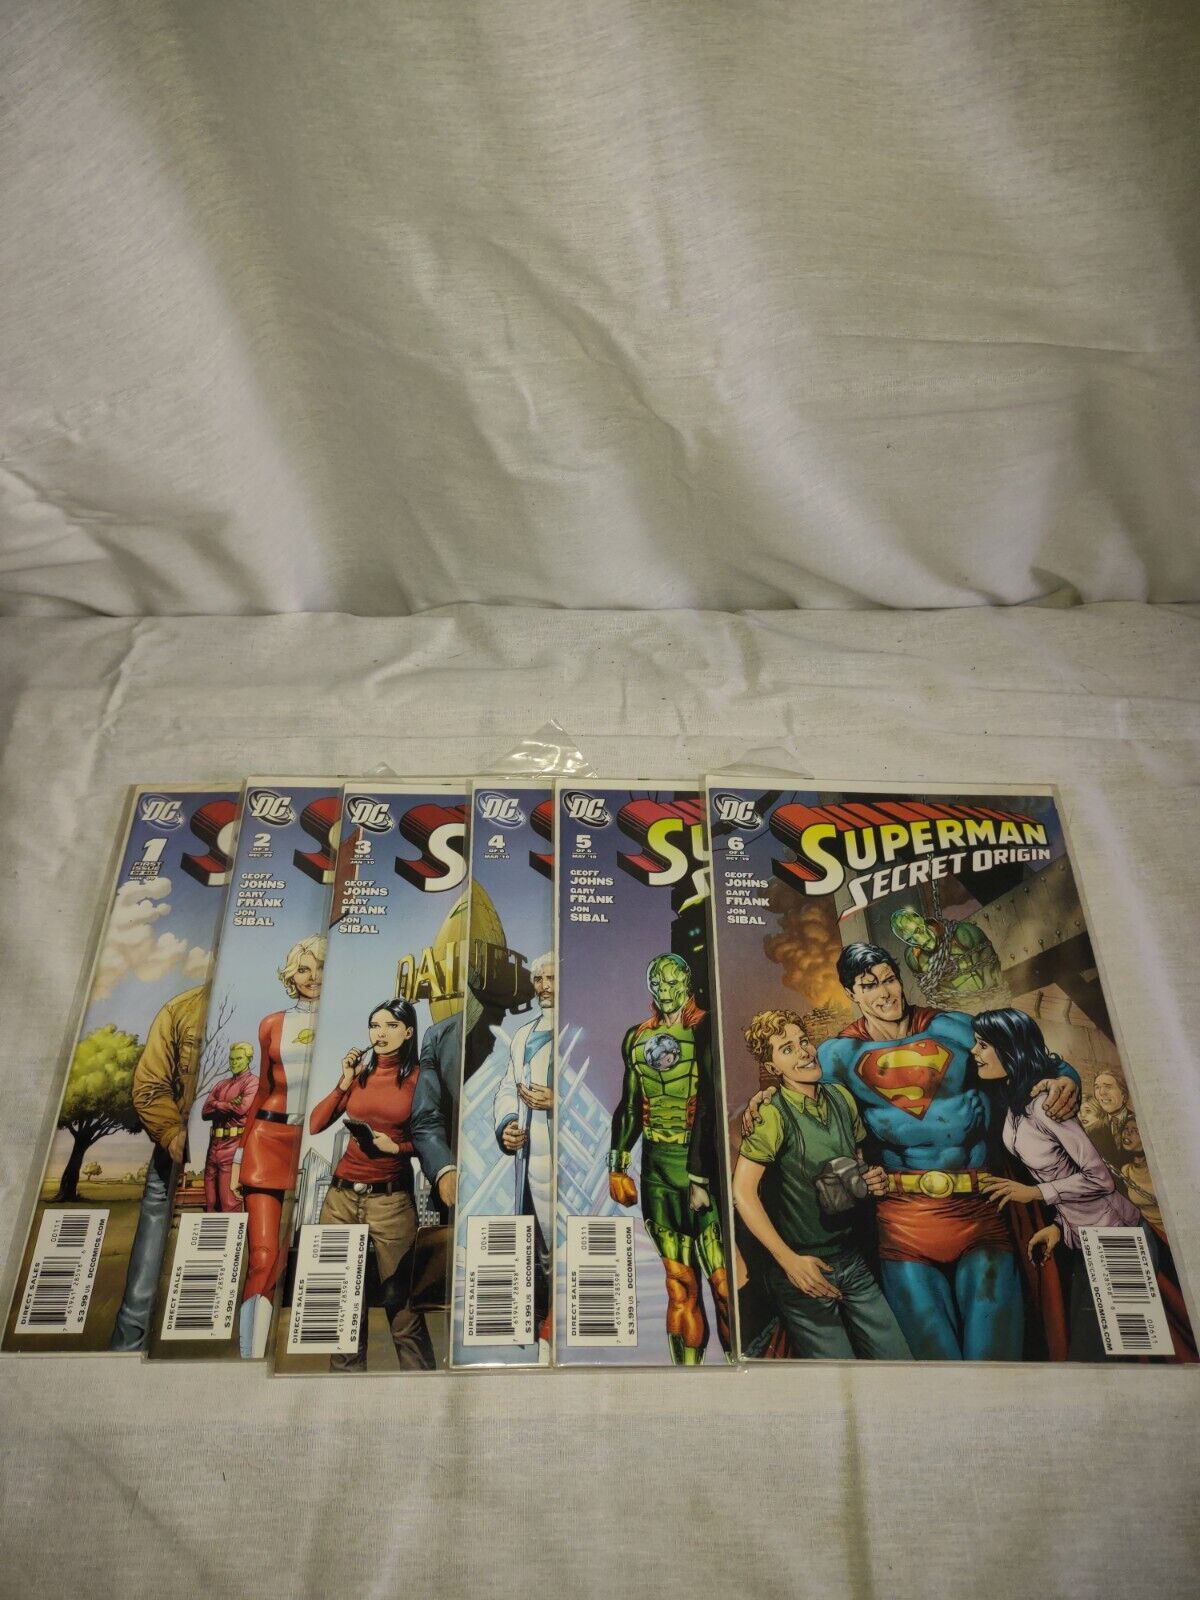 Superman Secret Origins #1-6 Complete Set NM Condition